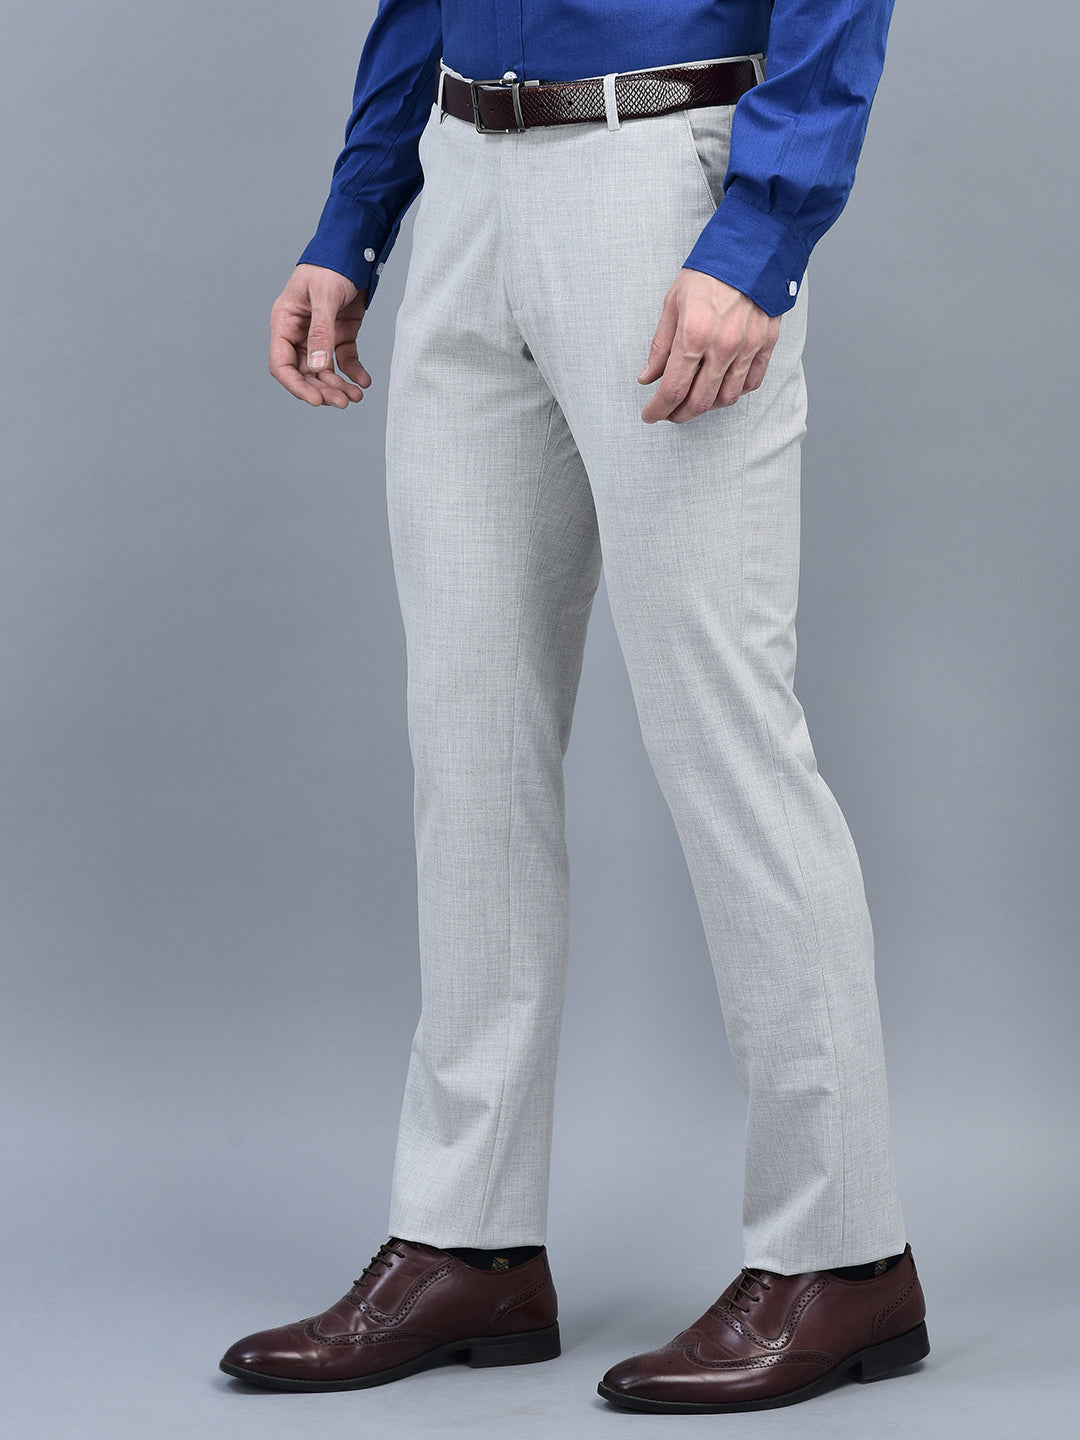 Merino Wool Capri Pants For Women | Smitten Merino